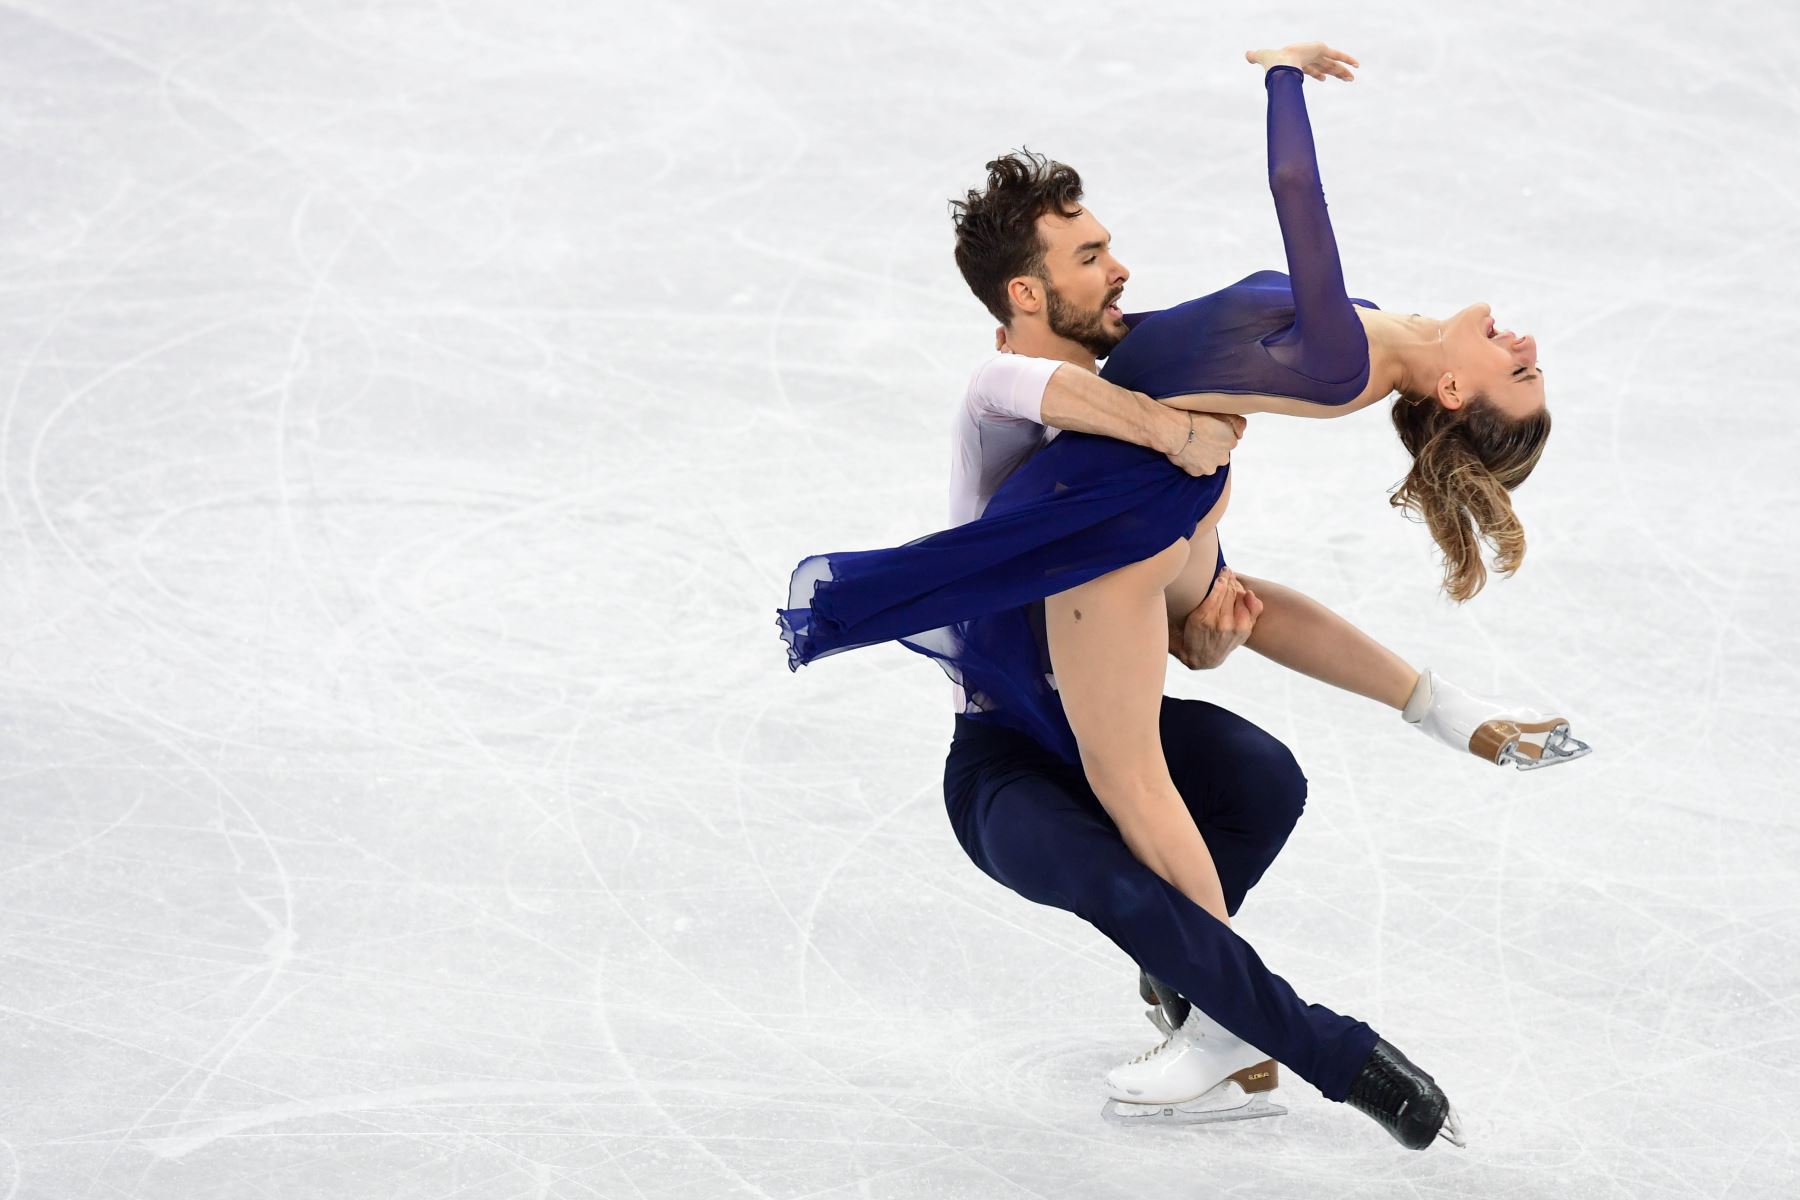 Competencia de patinaje artístico durante los Juegos Olímpicos de Invierno Pyeongchang 2018. Foto: AFP